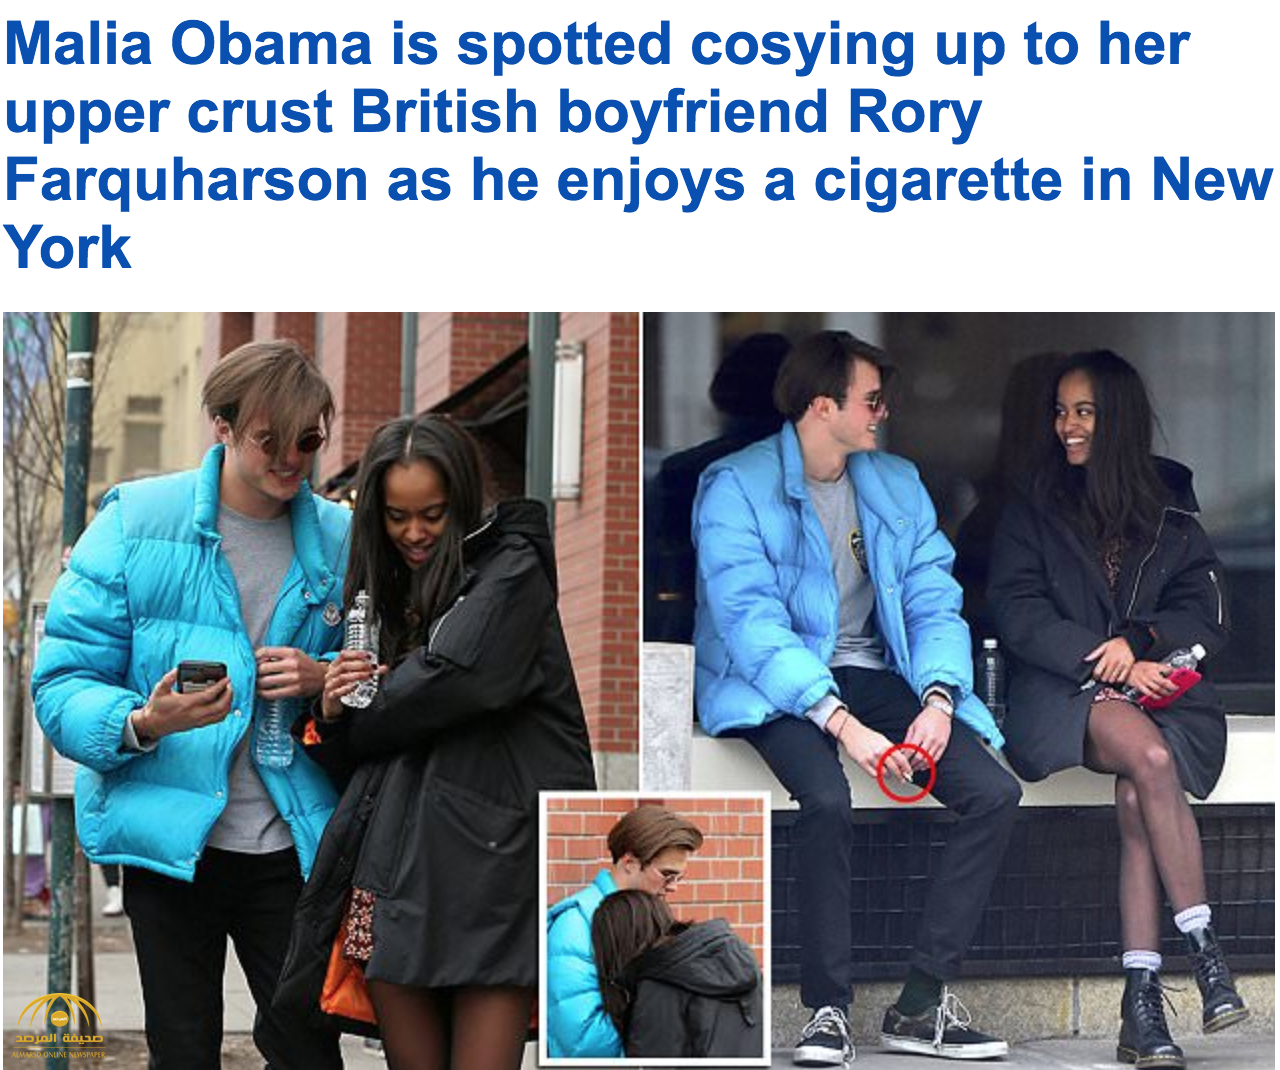 شاهد صور جديدة تفضح حقيقة علاقة "ماليا أوباما" برفيقها الإنجليزي الوسيم!